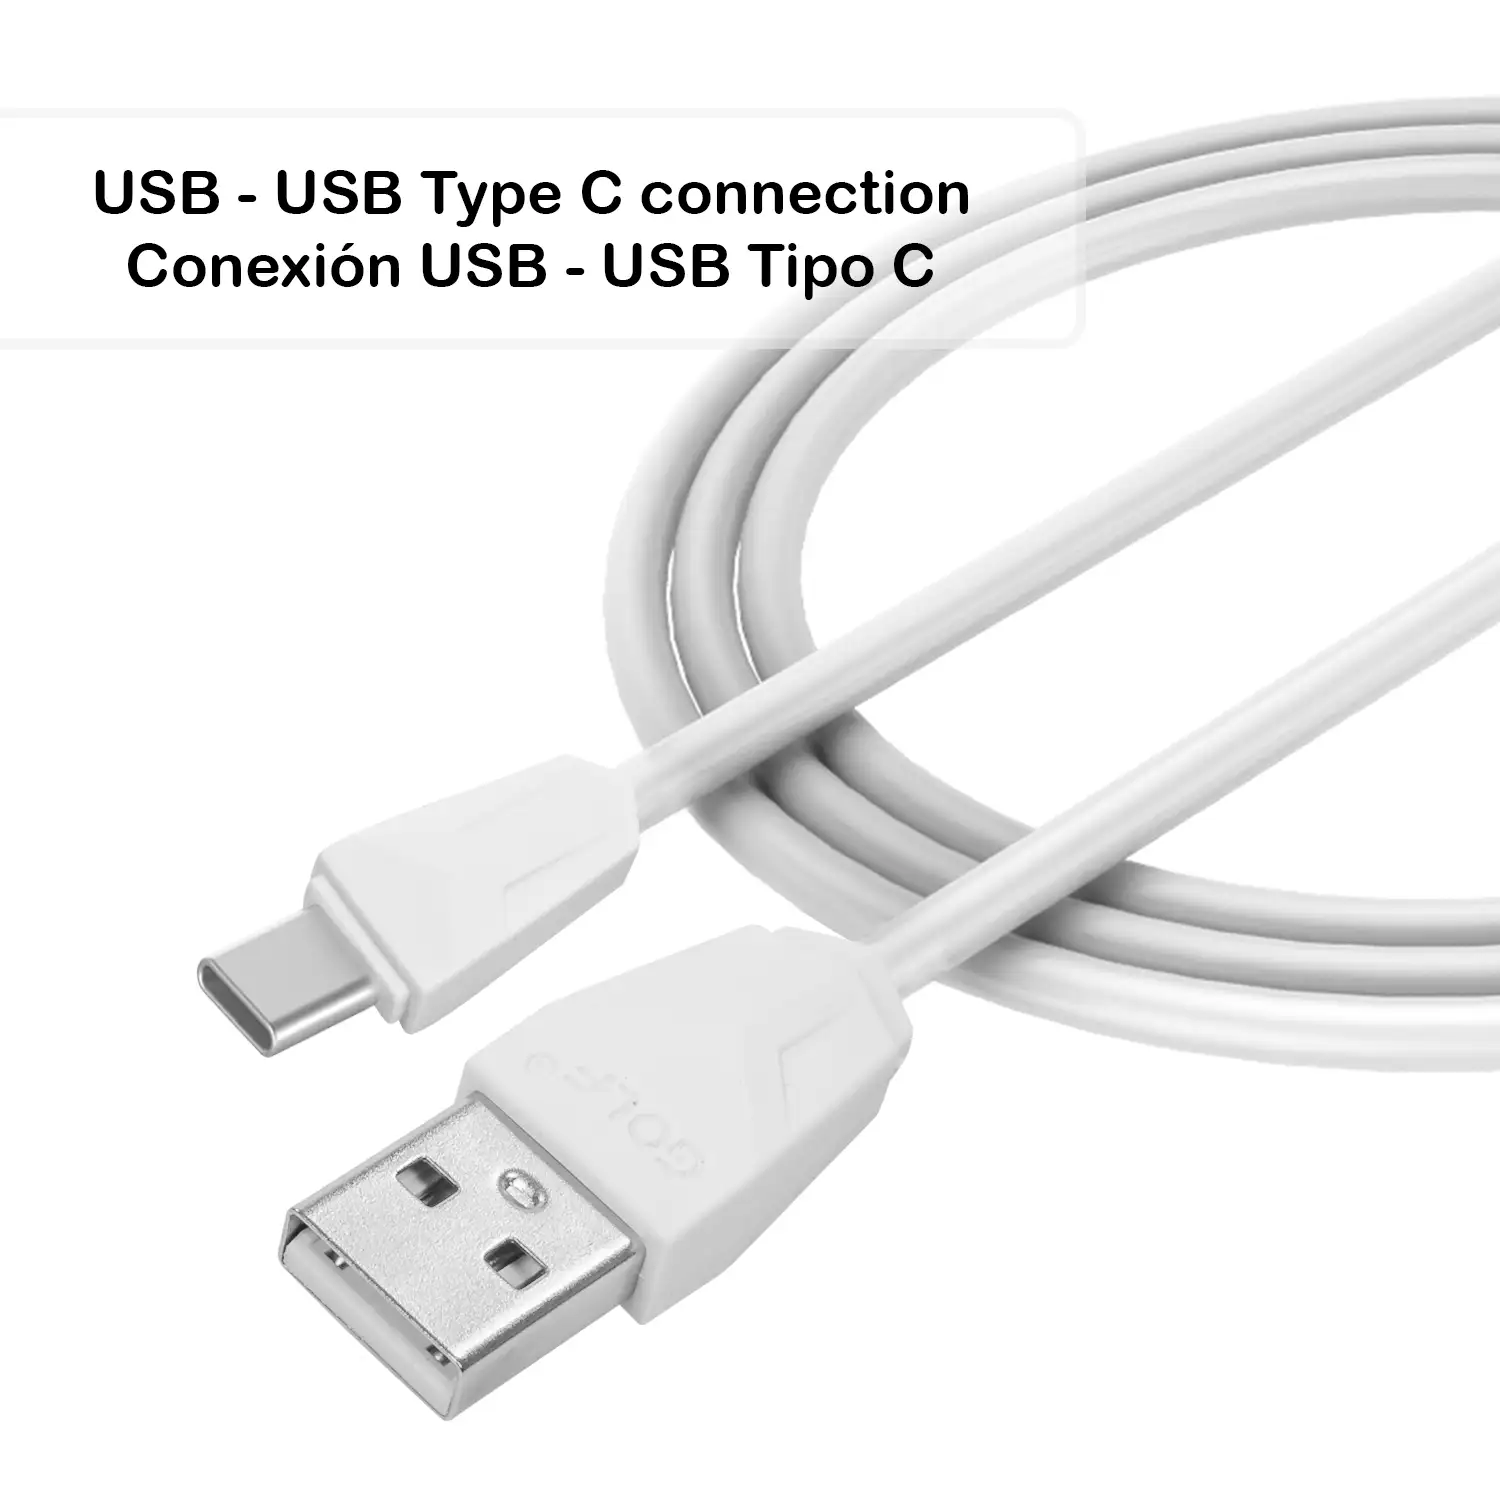 Cable de datos y carga rápida 2.4A USB Tipo C 1 metro.